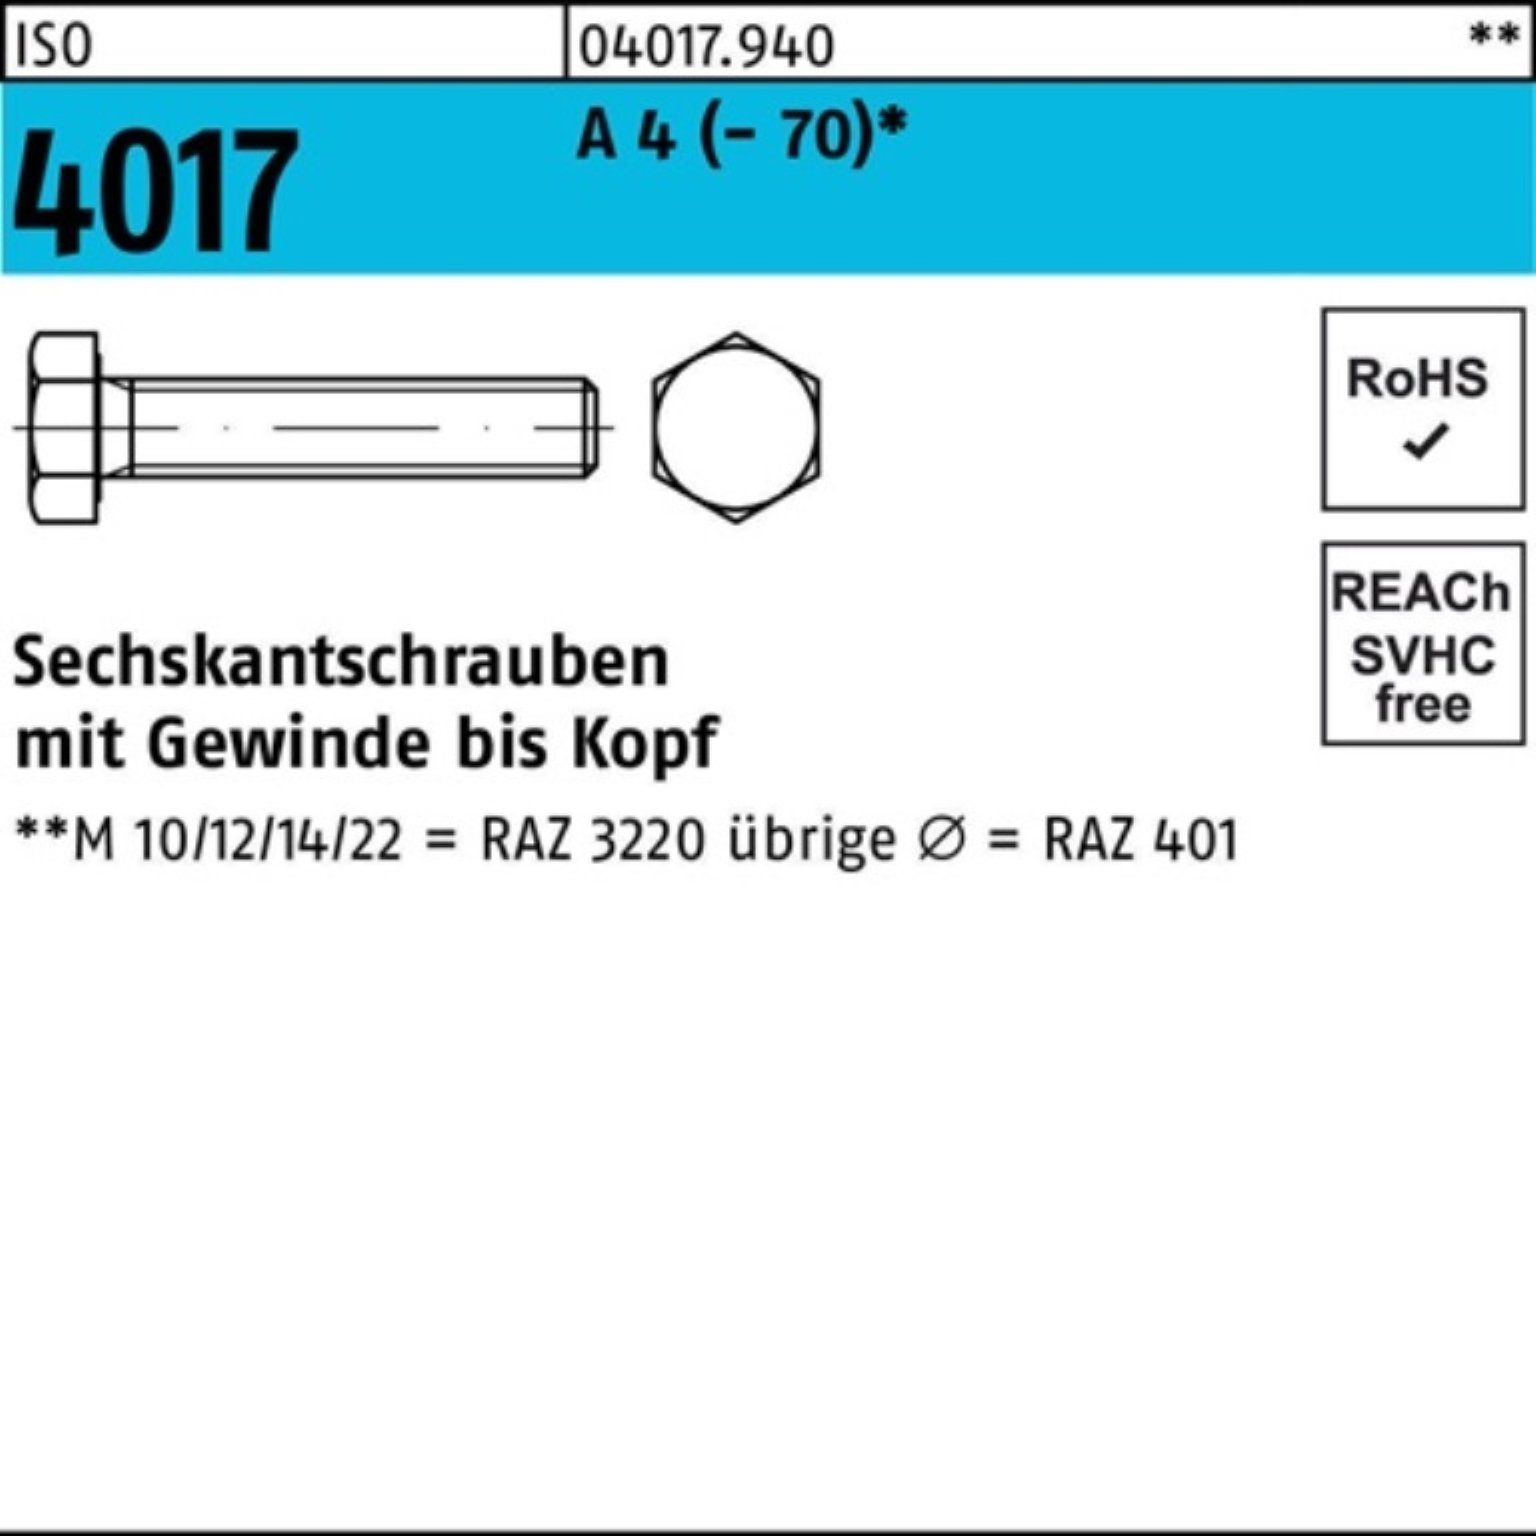 Bufab Sechskantschraube 100er Pack Sechskantschraube ISO 4017 VG M10x 200 A 4 (70) 1 Stück